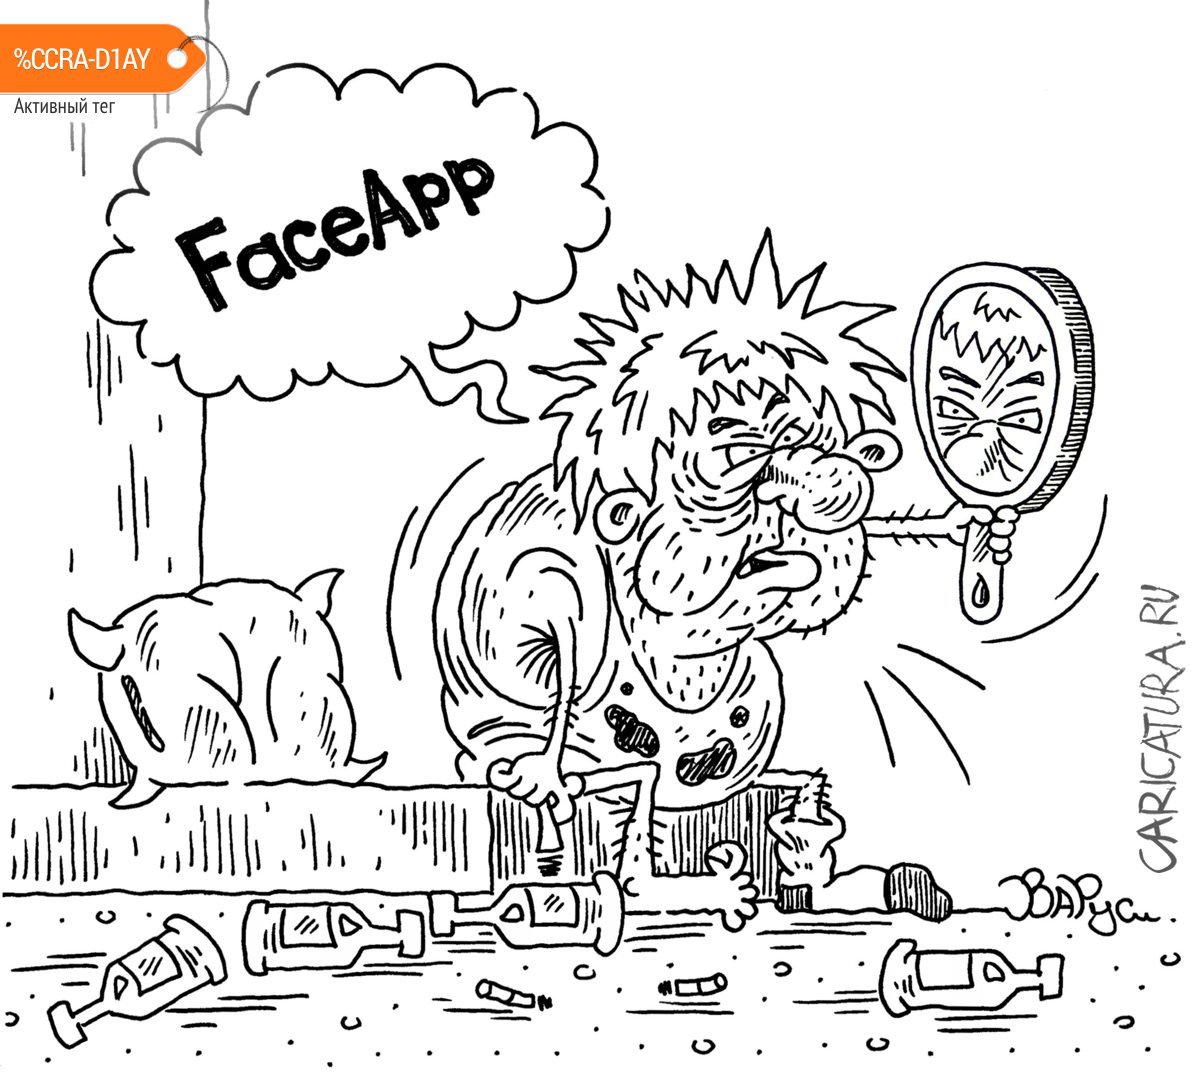 Карикатура "FaceApp", Руслан Валитов